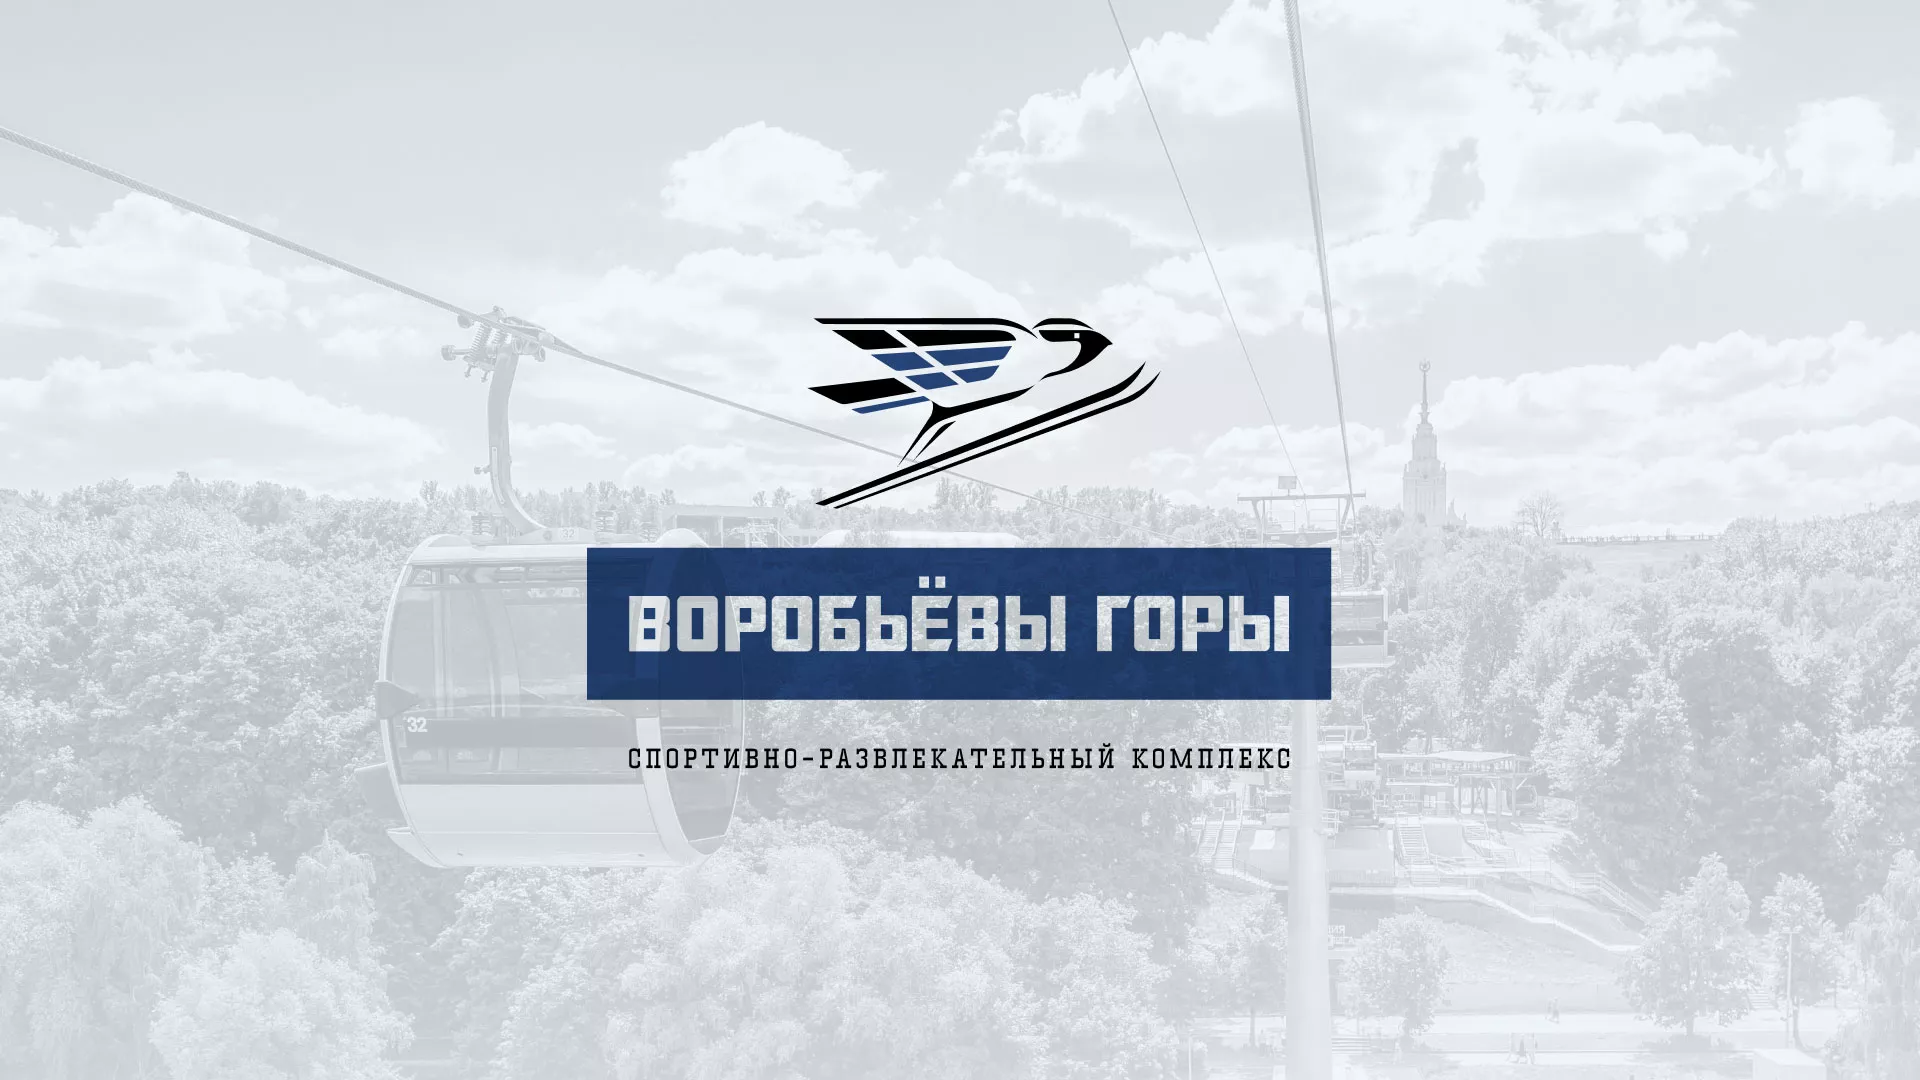 Разработка сайта в Кизляре для спортивно-развлекательного комплекса «Воробьёвы горы»